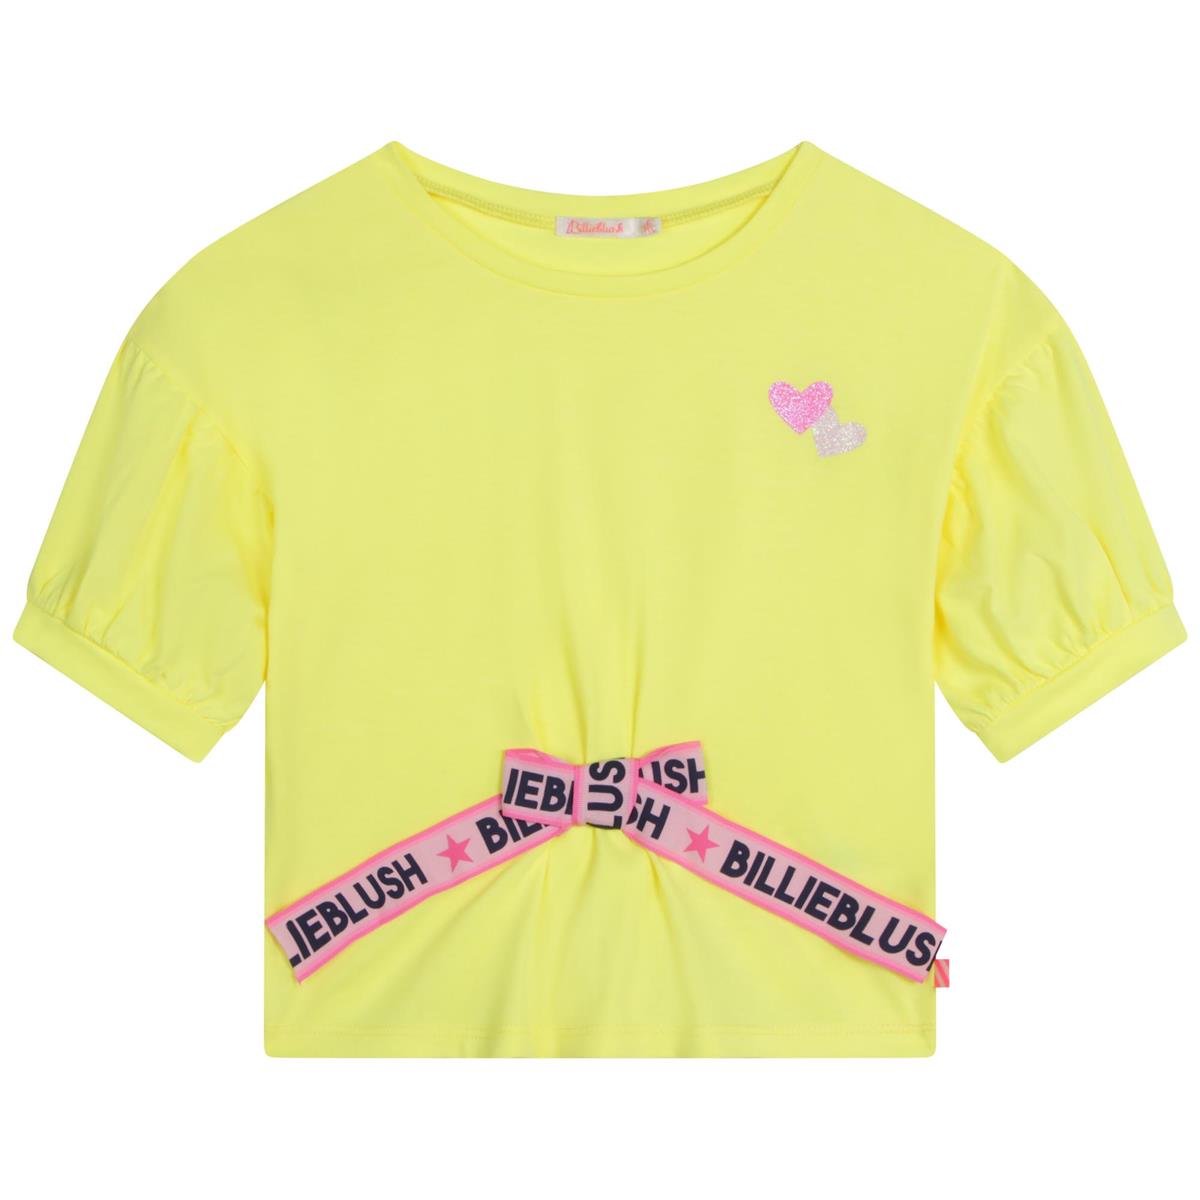 Girls Yellow T-Shirt